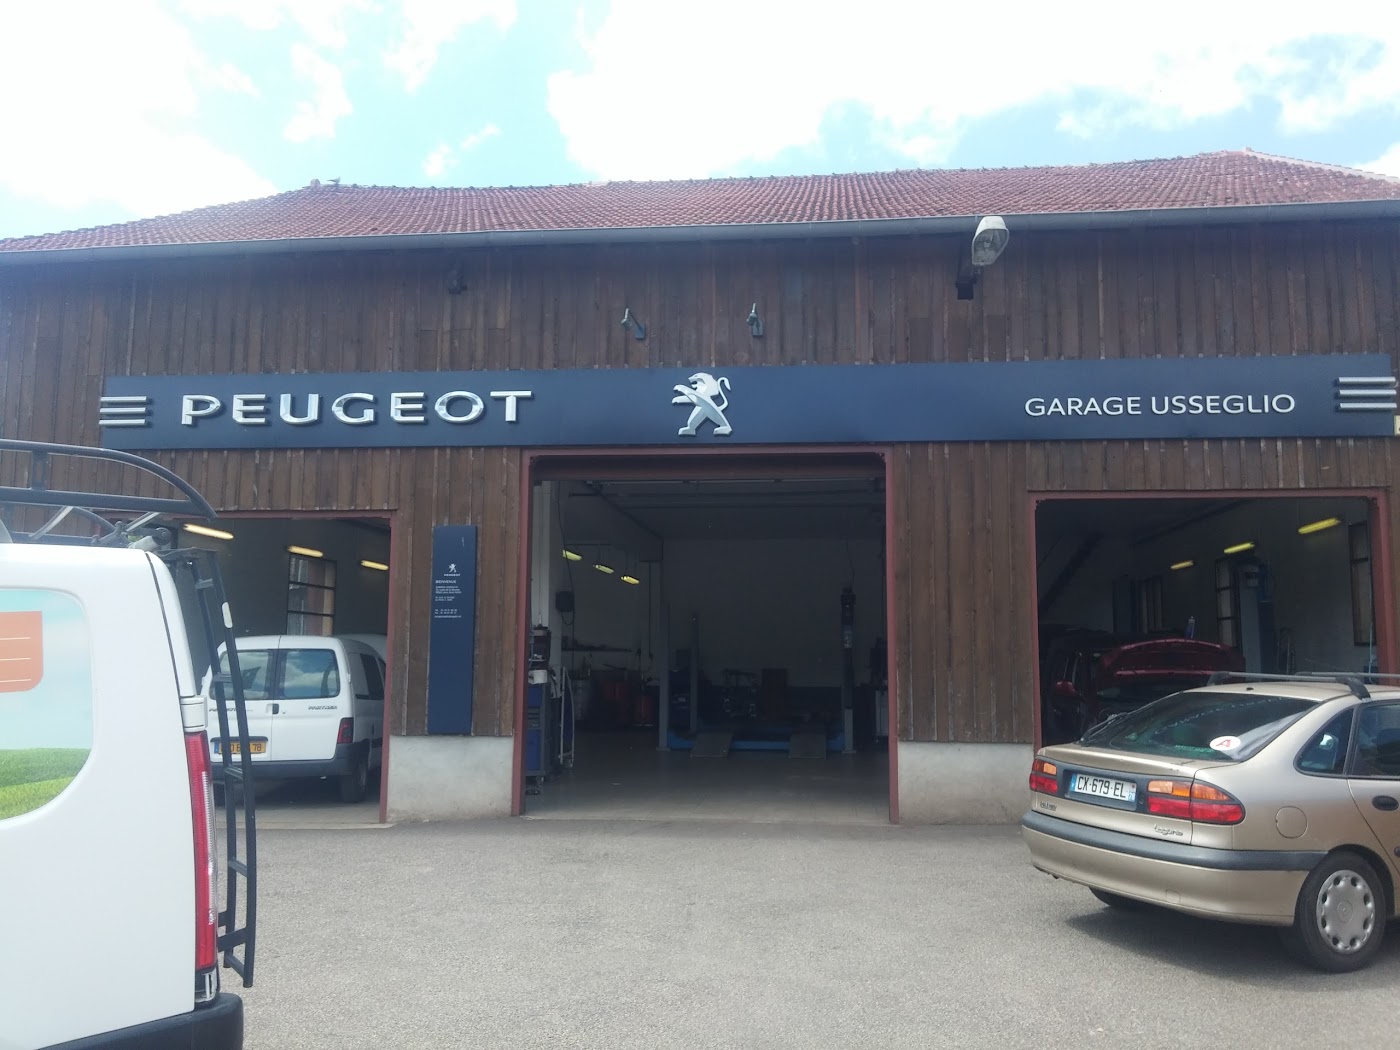 PEUGEOT - GARAGE USSEGLIO